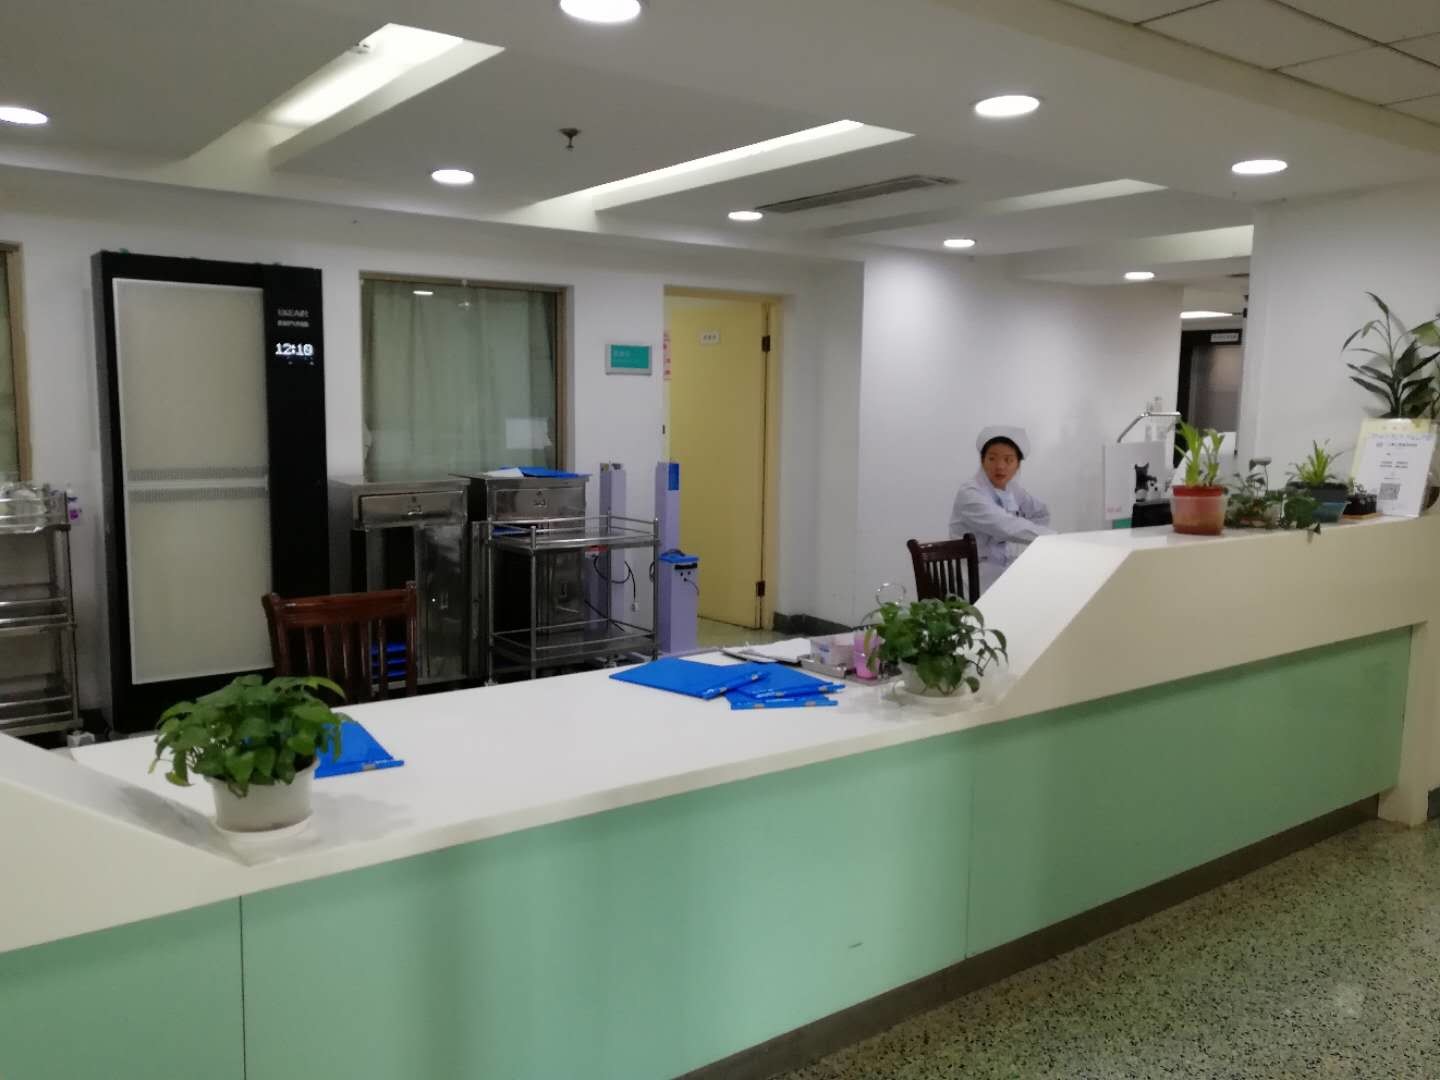 mais recente caso da empresa sobre Renji Hospital de Shanghai Jiao Tong University